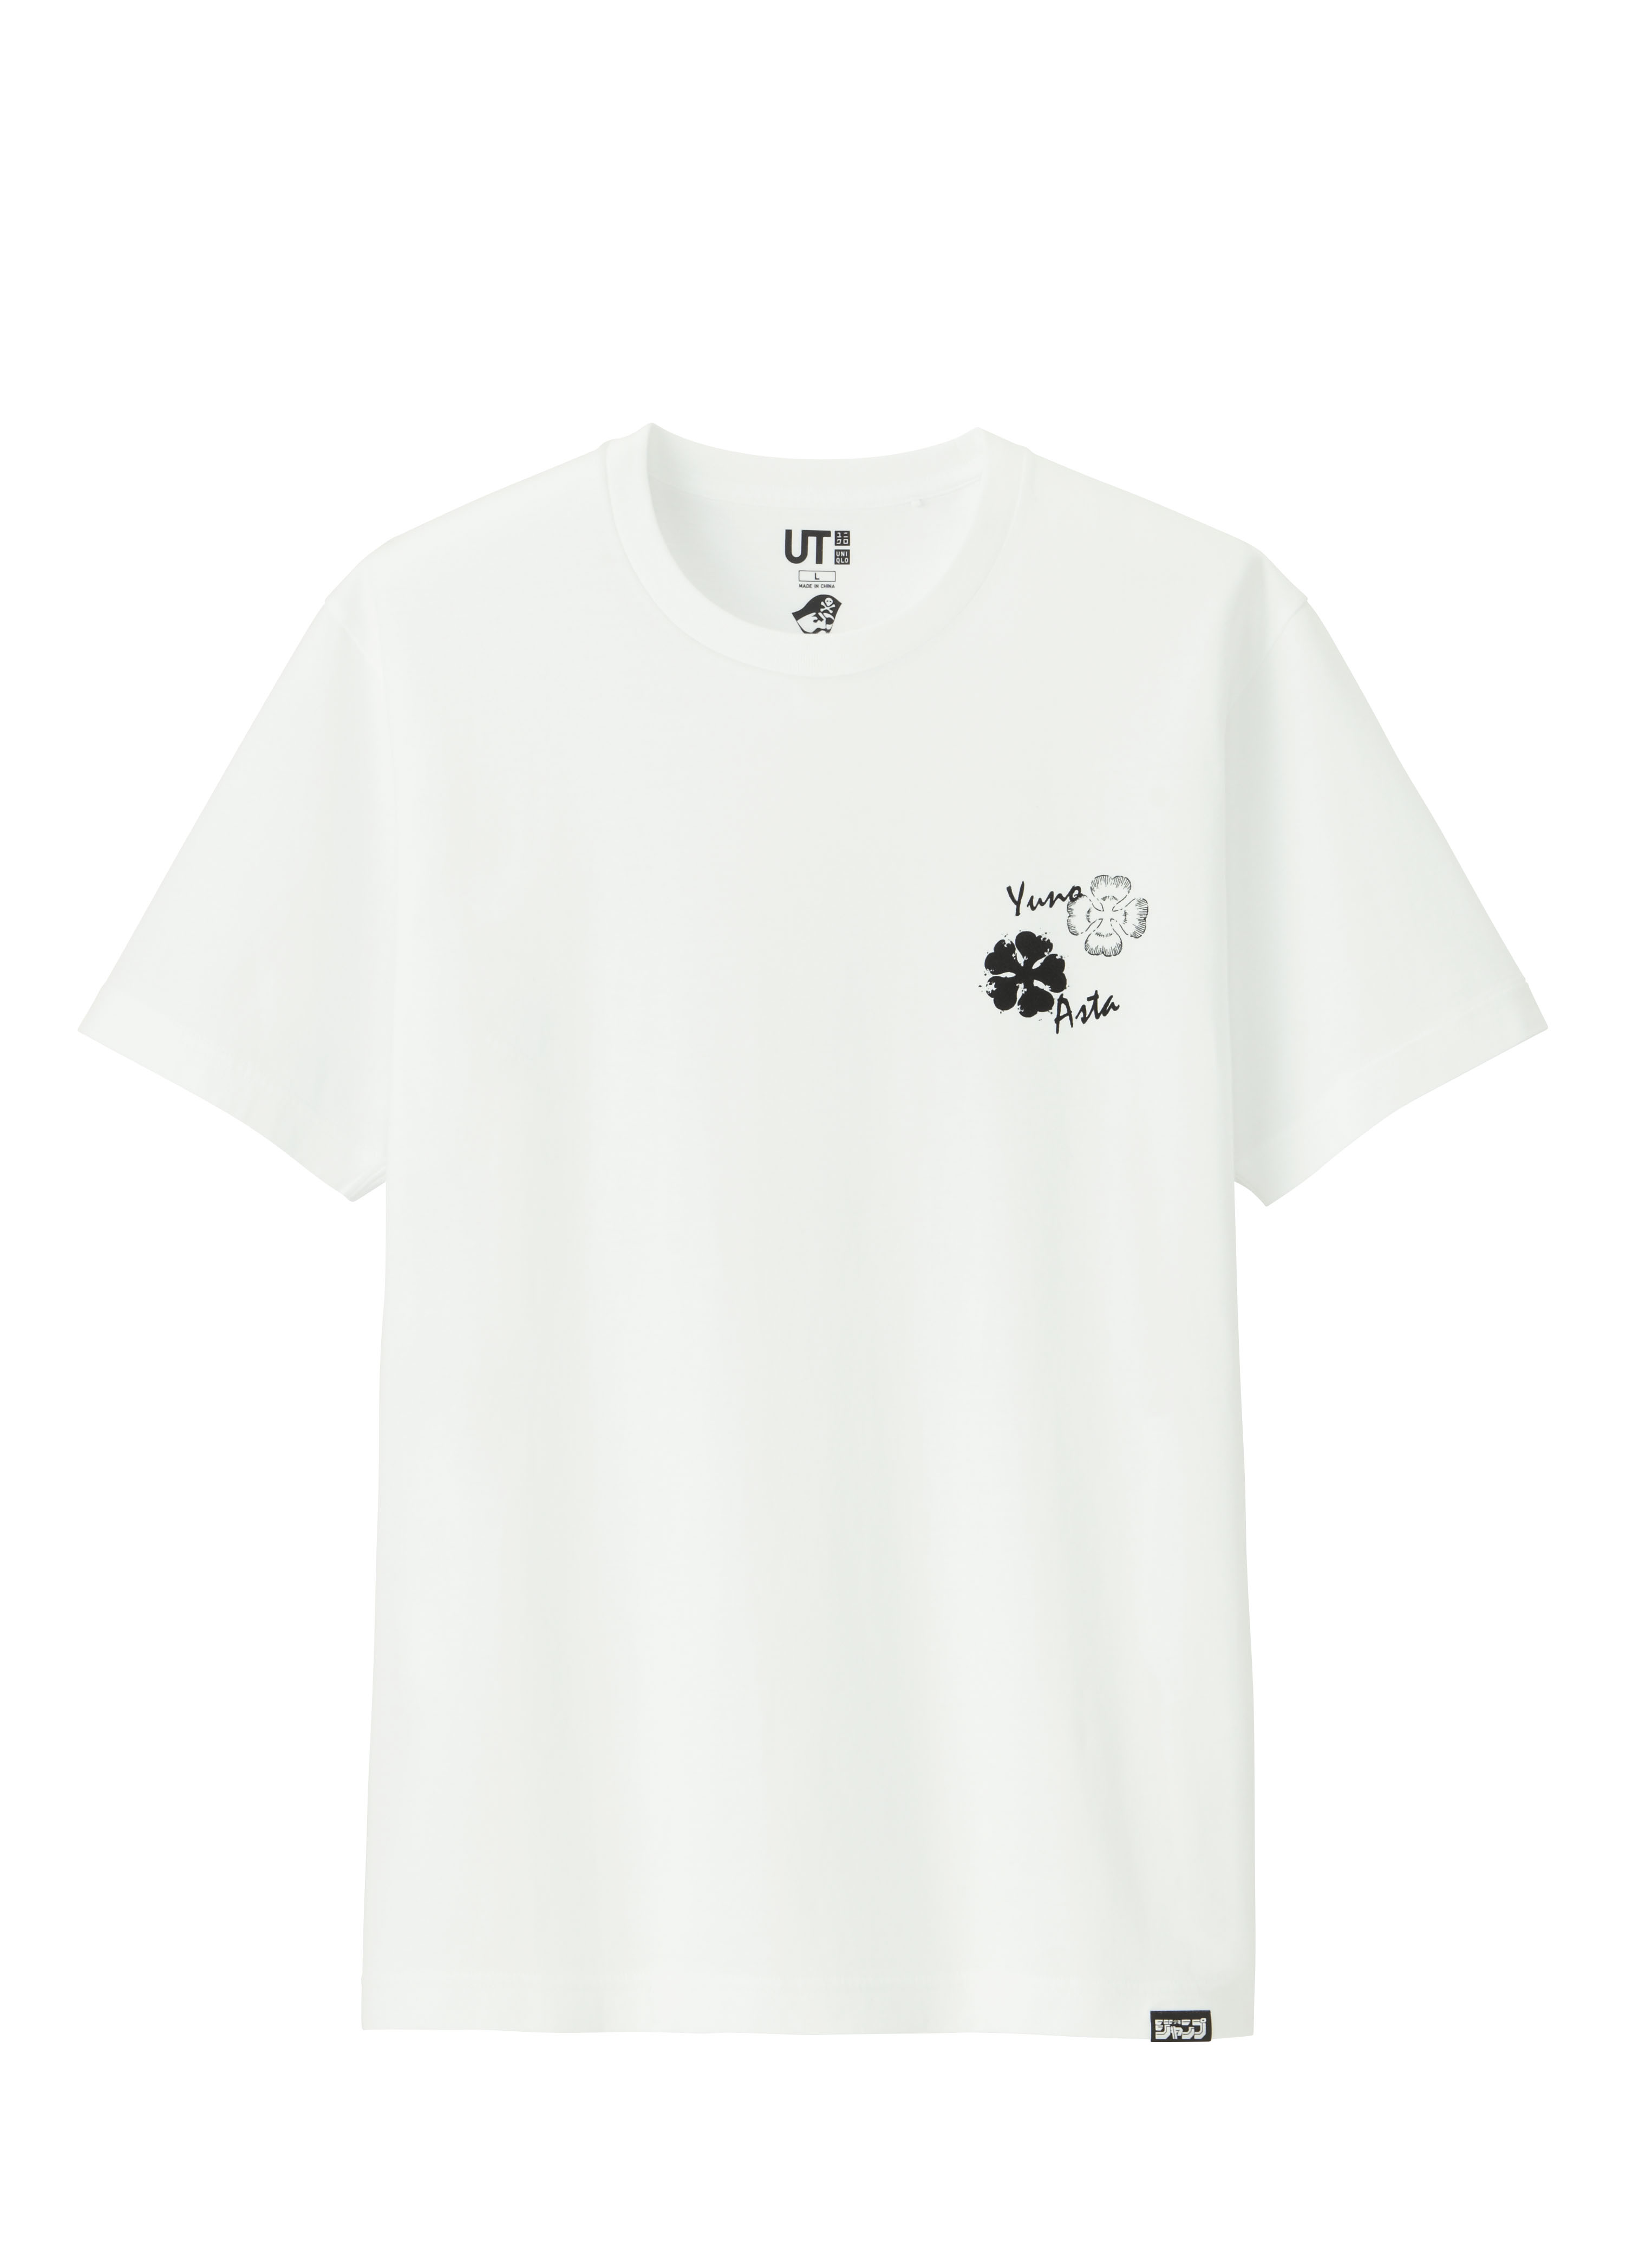 ユニクロ 人気マンガのキャラクターtシャツ ジャンプut を発売開始 Moshi Moshi Nippon もしもしにっぽん